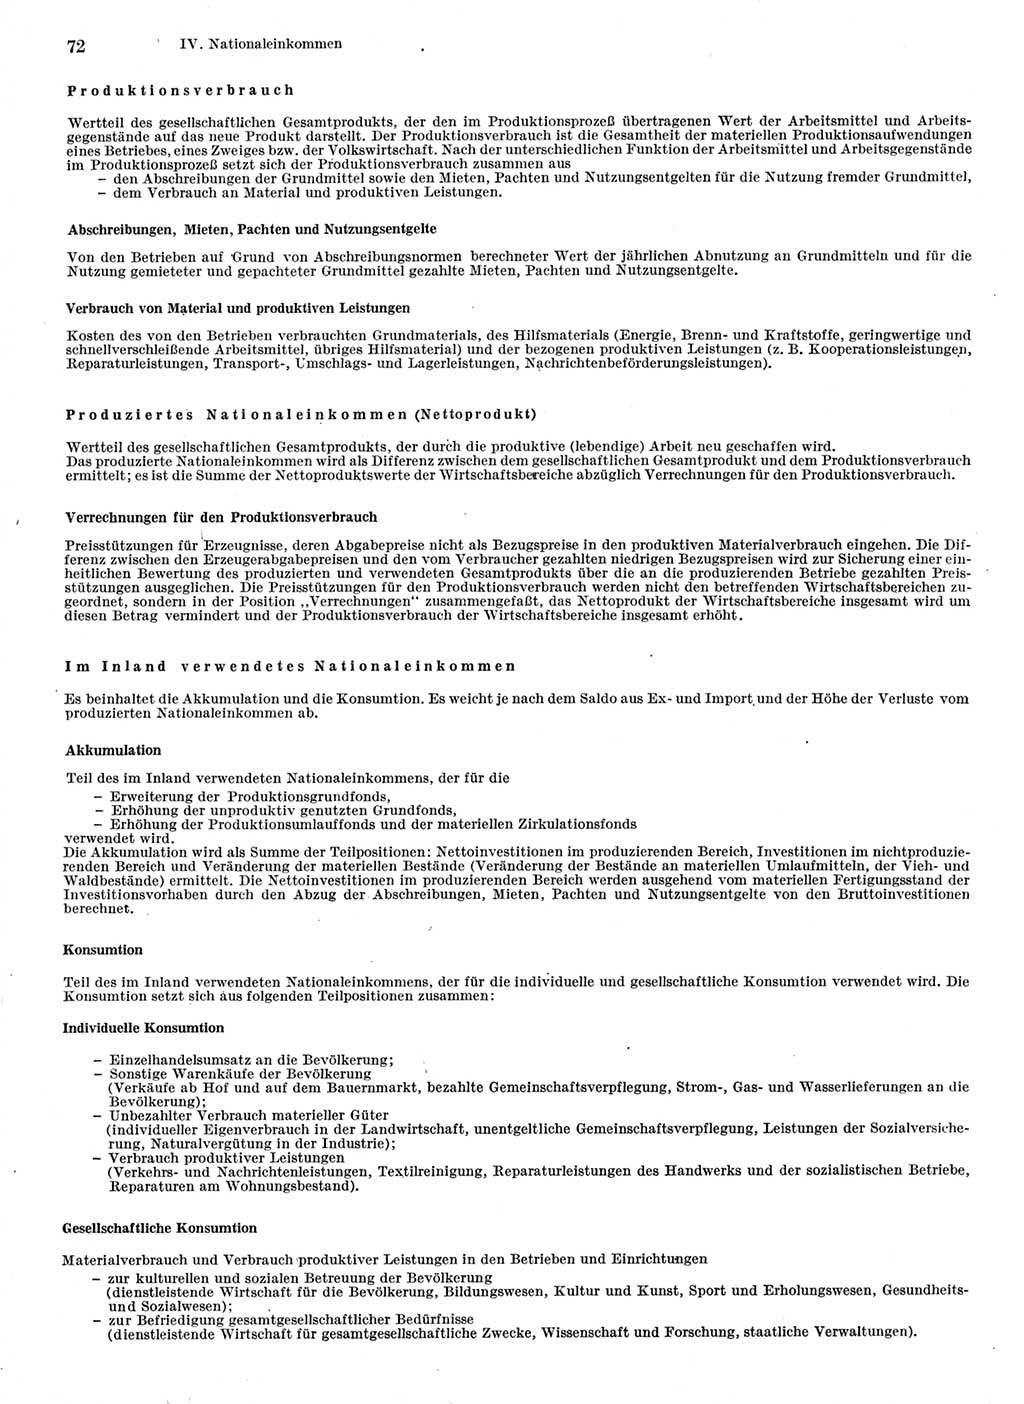 Statistisches Jahrbuch der Deutschen Demokratischen Republik (DDR) 1978, Seite 72 (Stat. Jb. DDR 1978, S. 72)